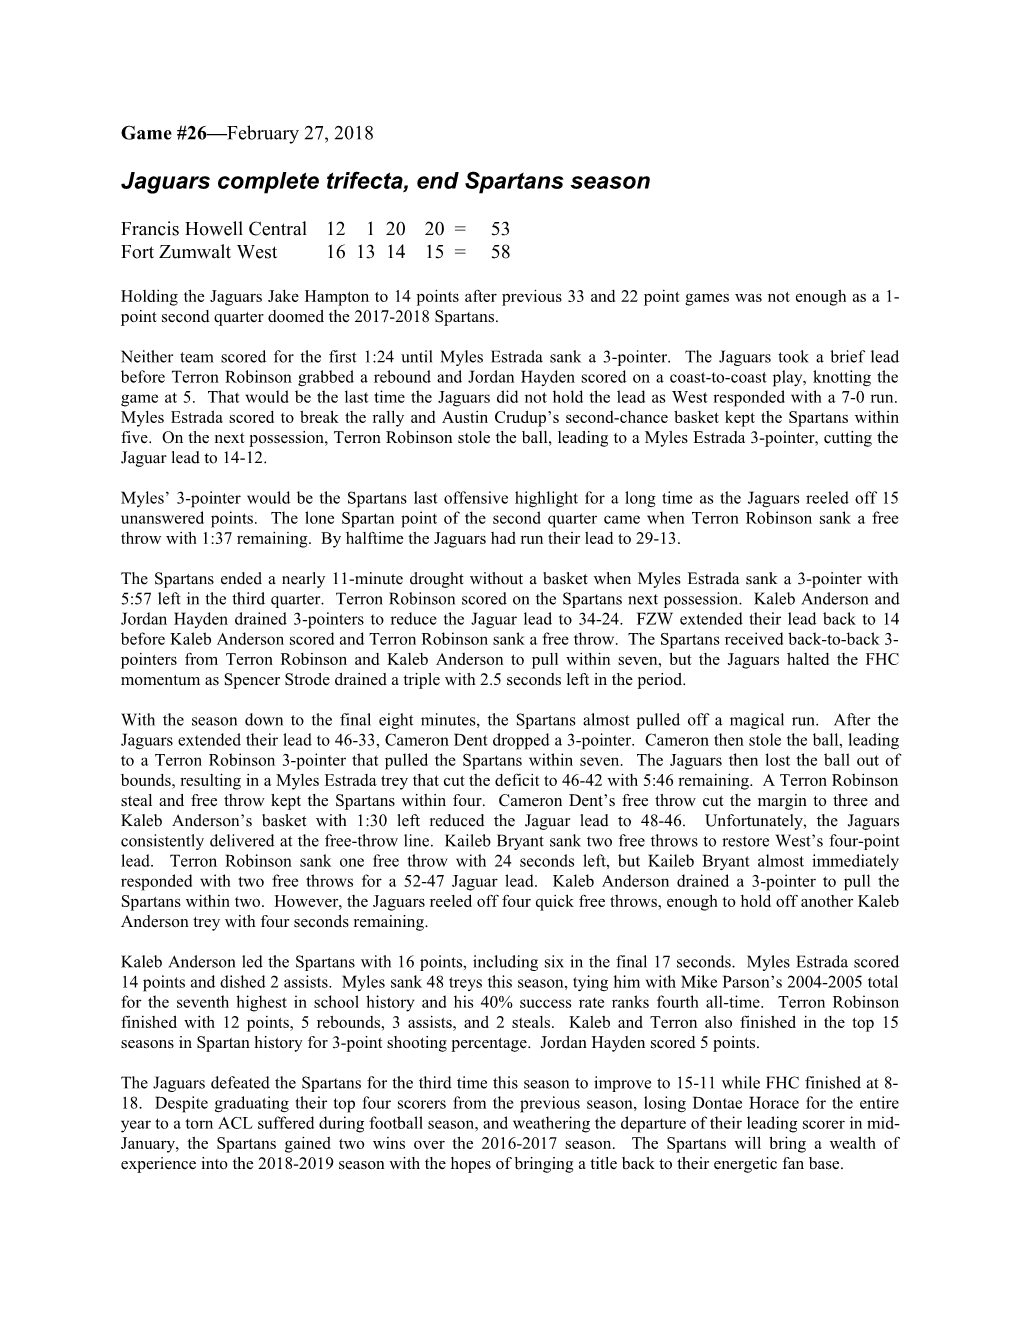 Jaguars Complete Trifecta, End Spartans Season